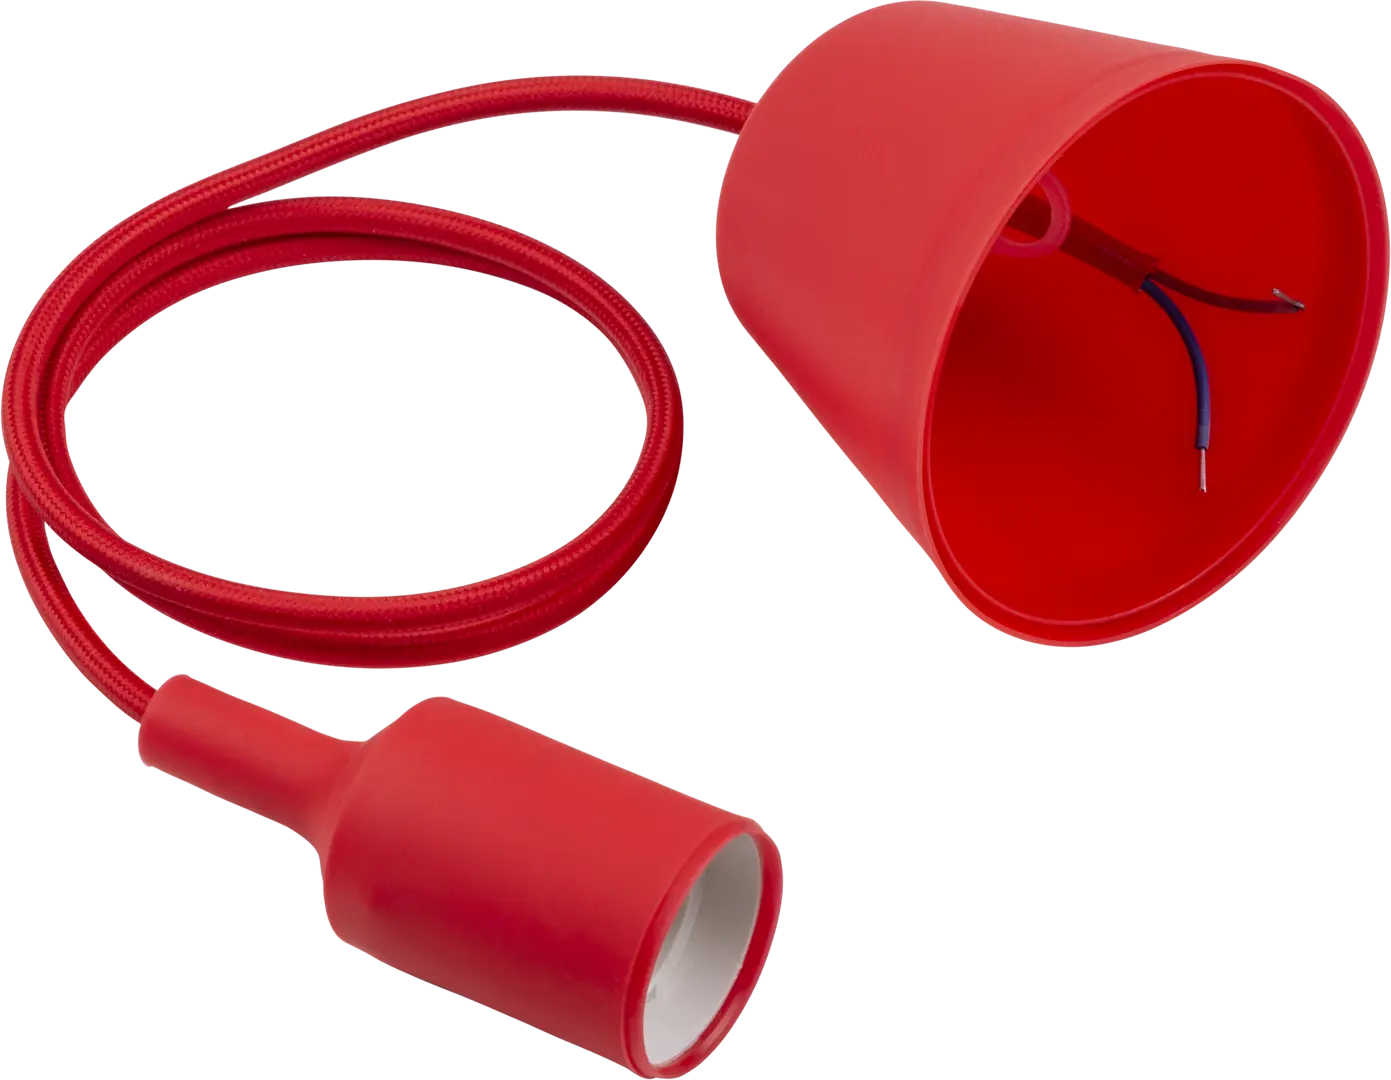 Патрон для лампы E27 TDM Electric с подвесом 1 м цвет красный